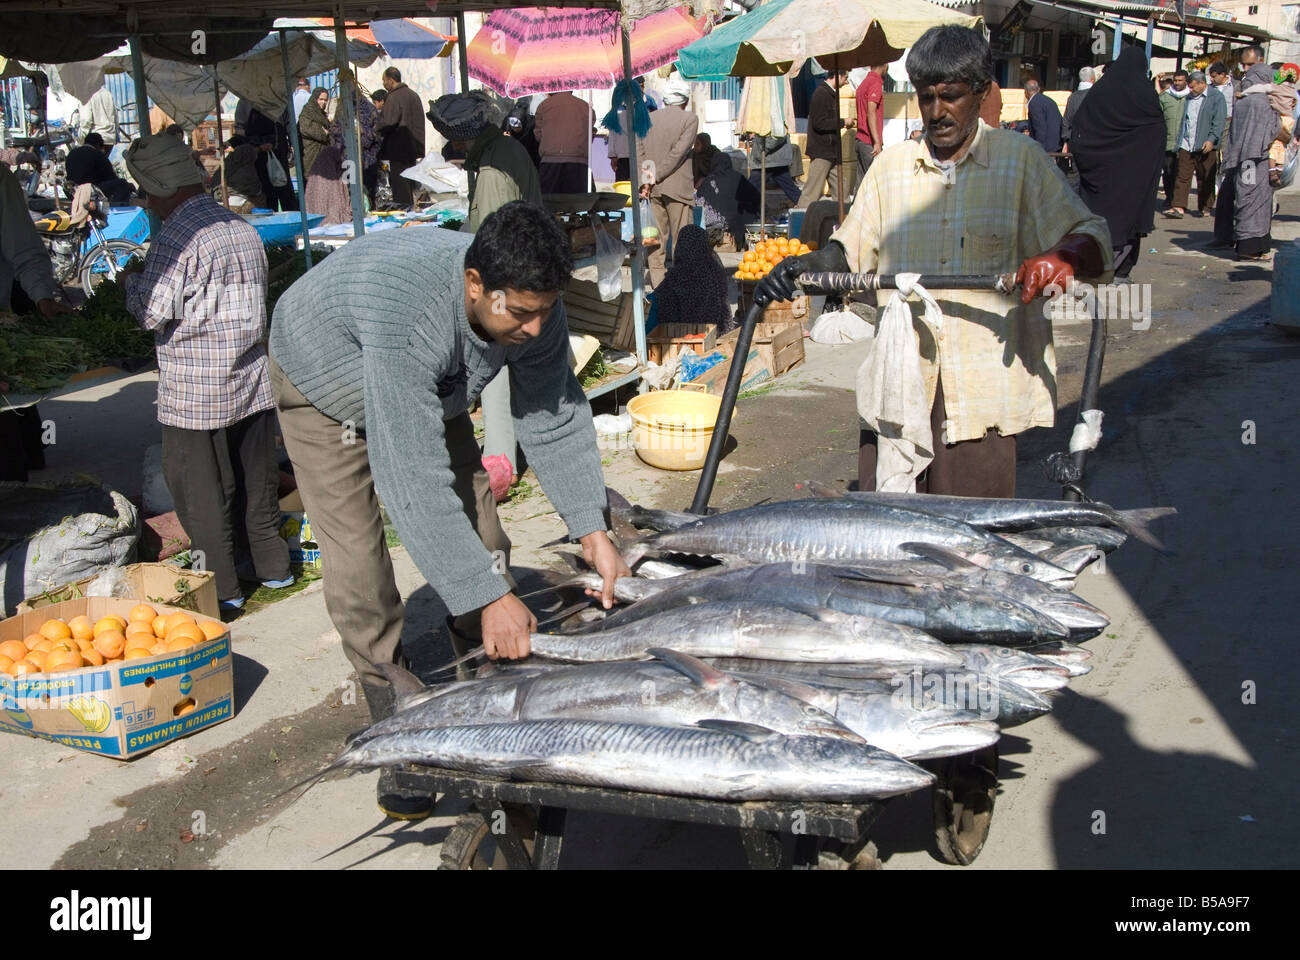 Marché aux poissons le matin Bandar Abbas le sud de l'Iran Moyen-orient Banque D'Images